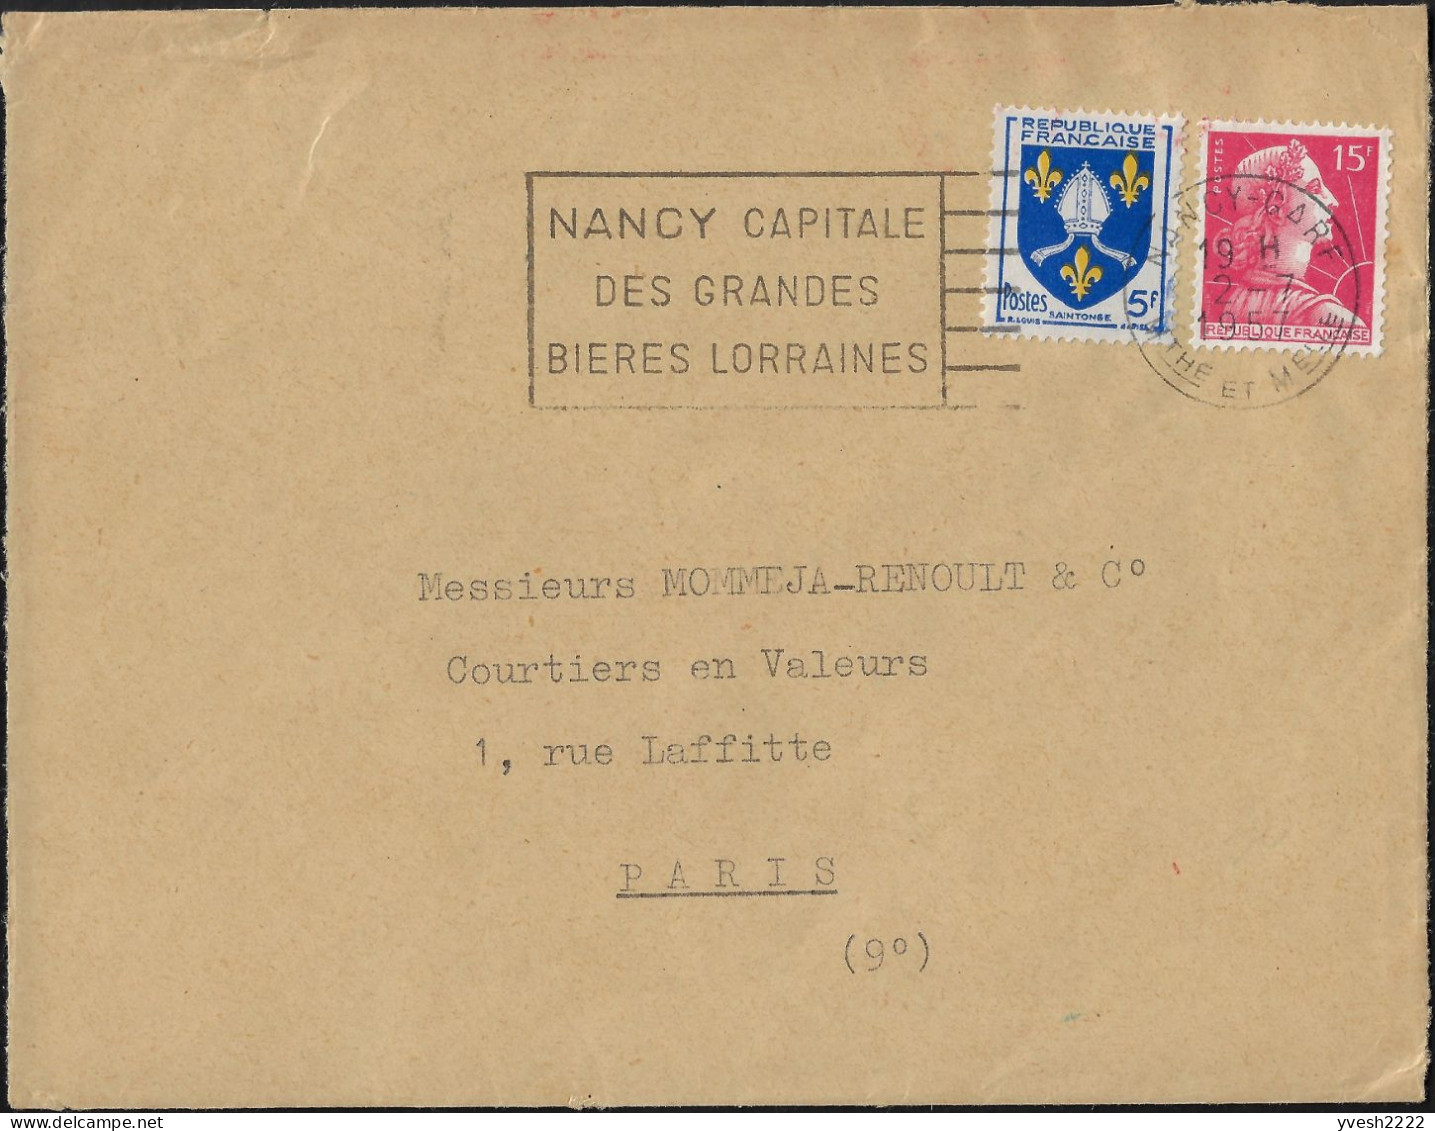 France 1959  Nancy, Capitale Des Grandes Bières Lorraines - Biere